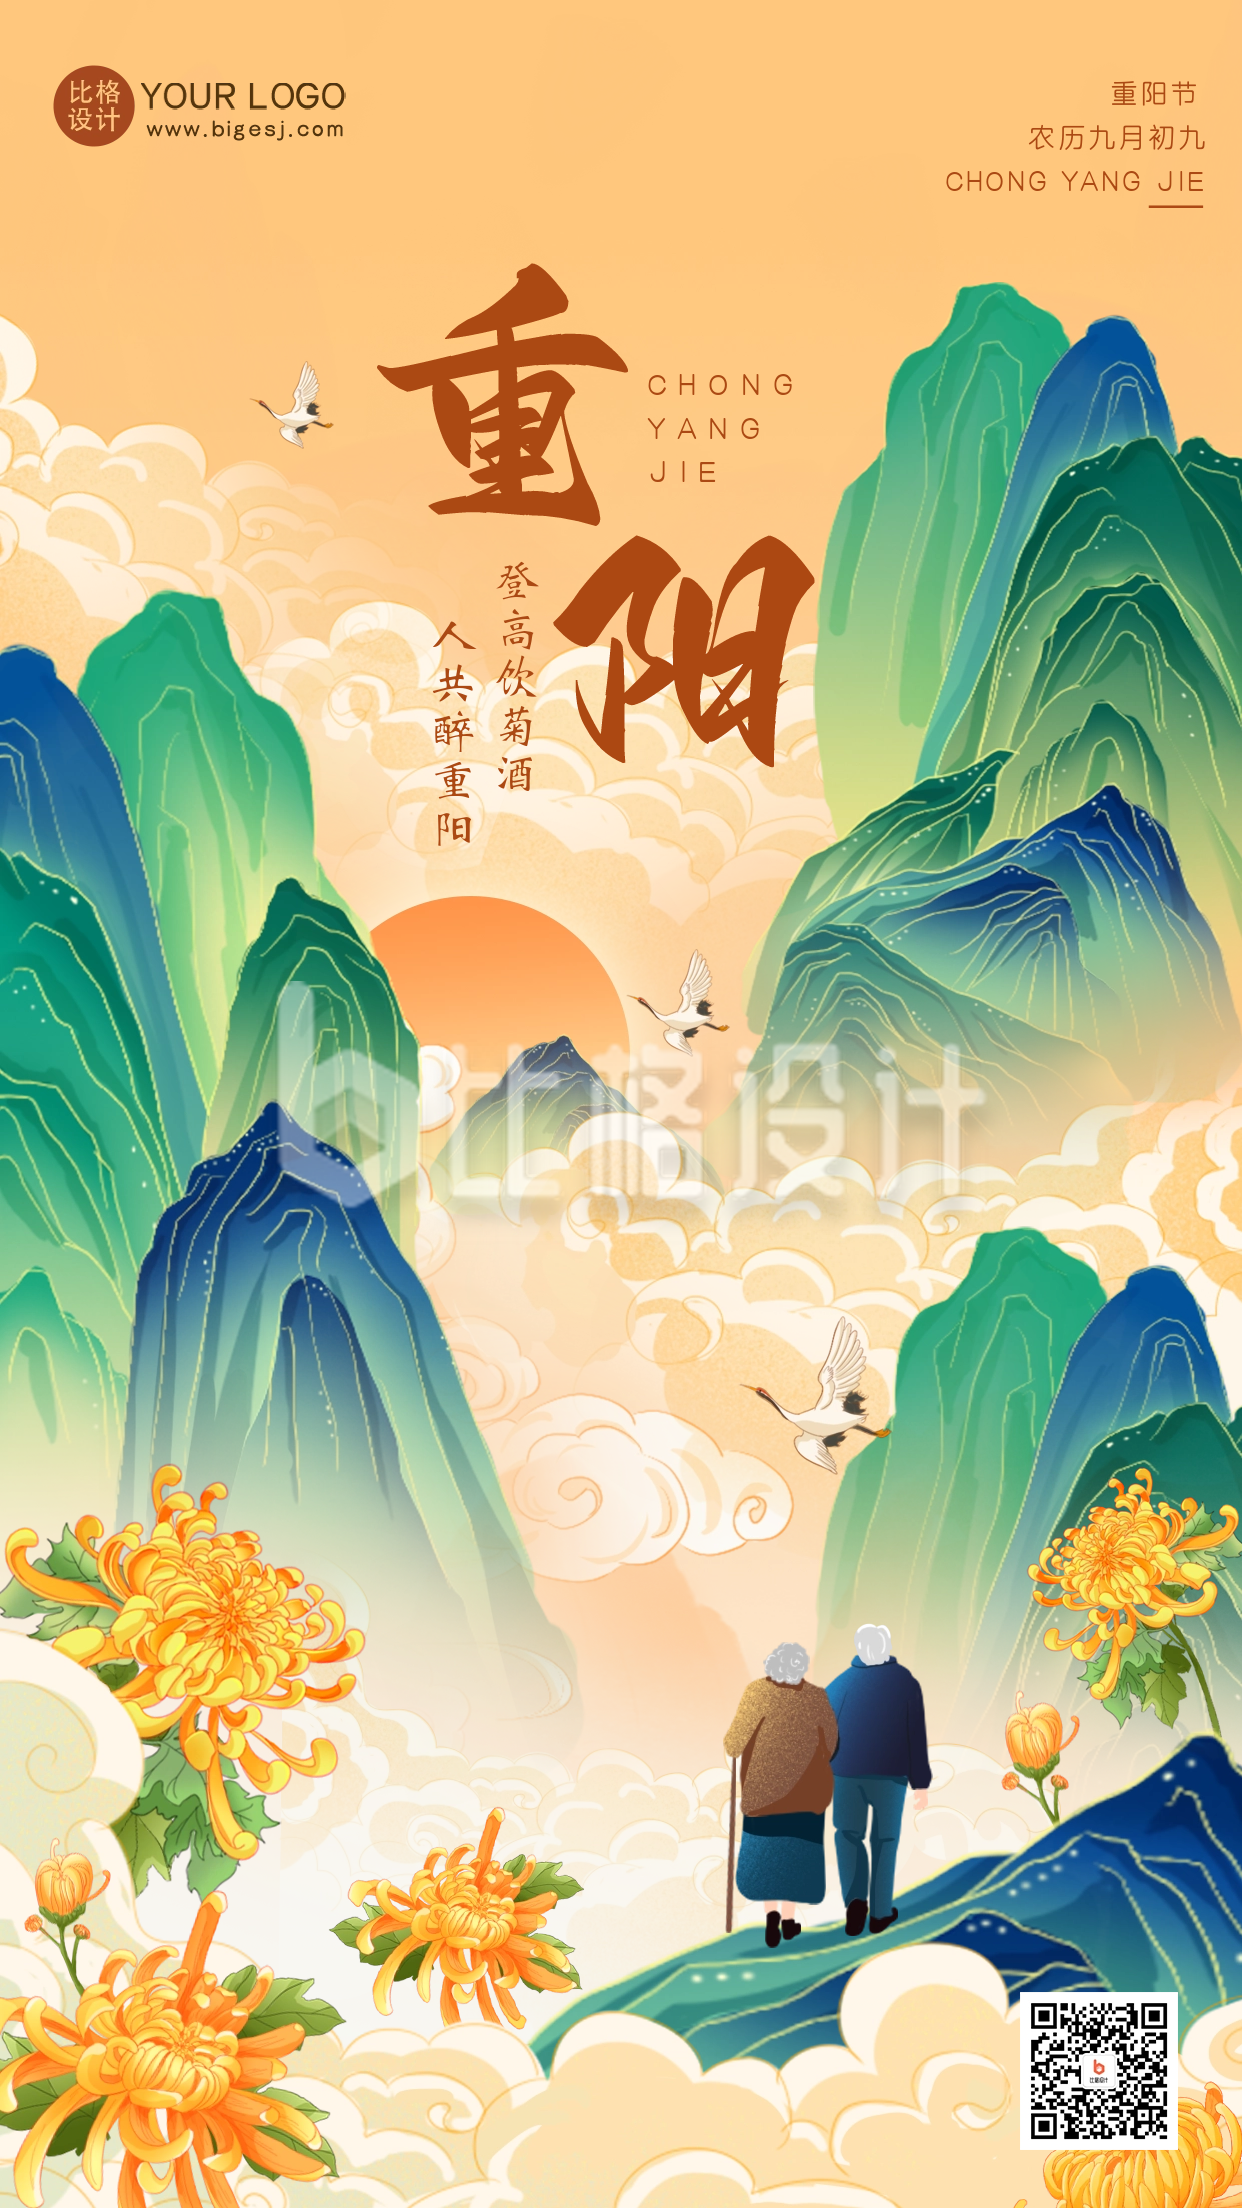 重阳节节日祝福海报